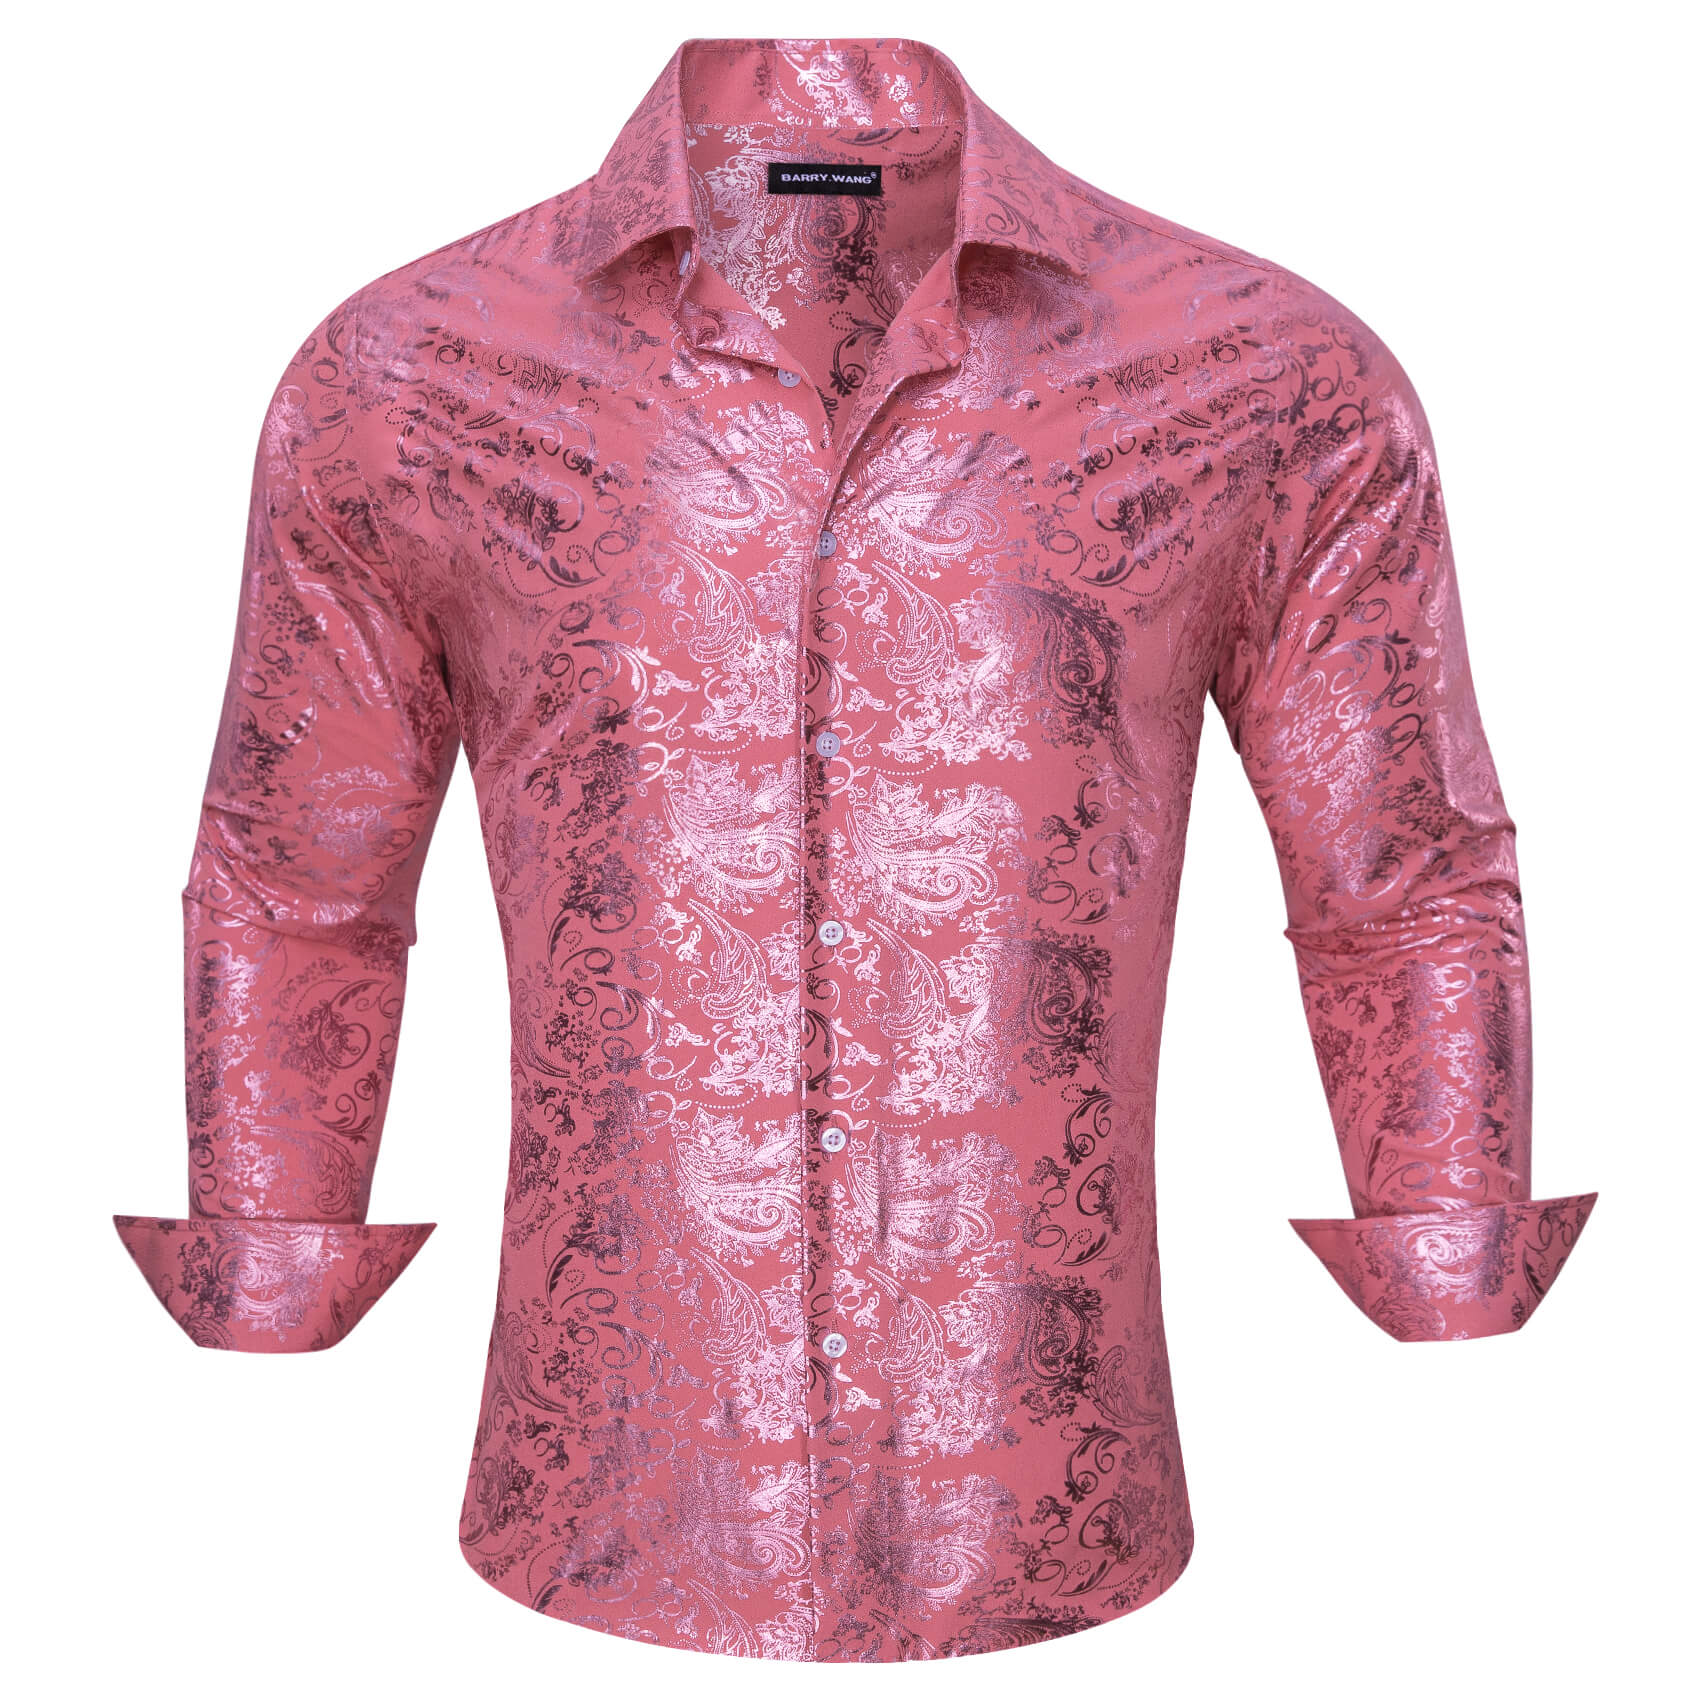 Men's Bronzing Shirt Watermelon Pink Floral Silk Shirt